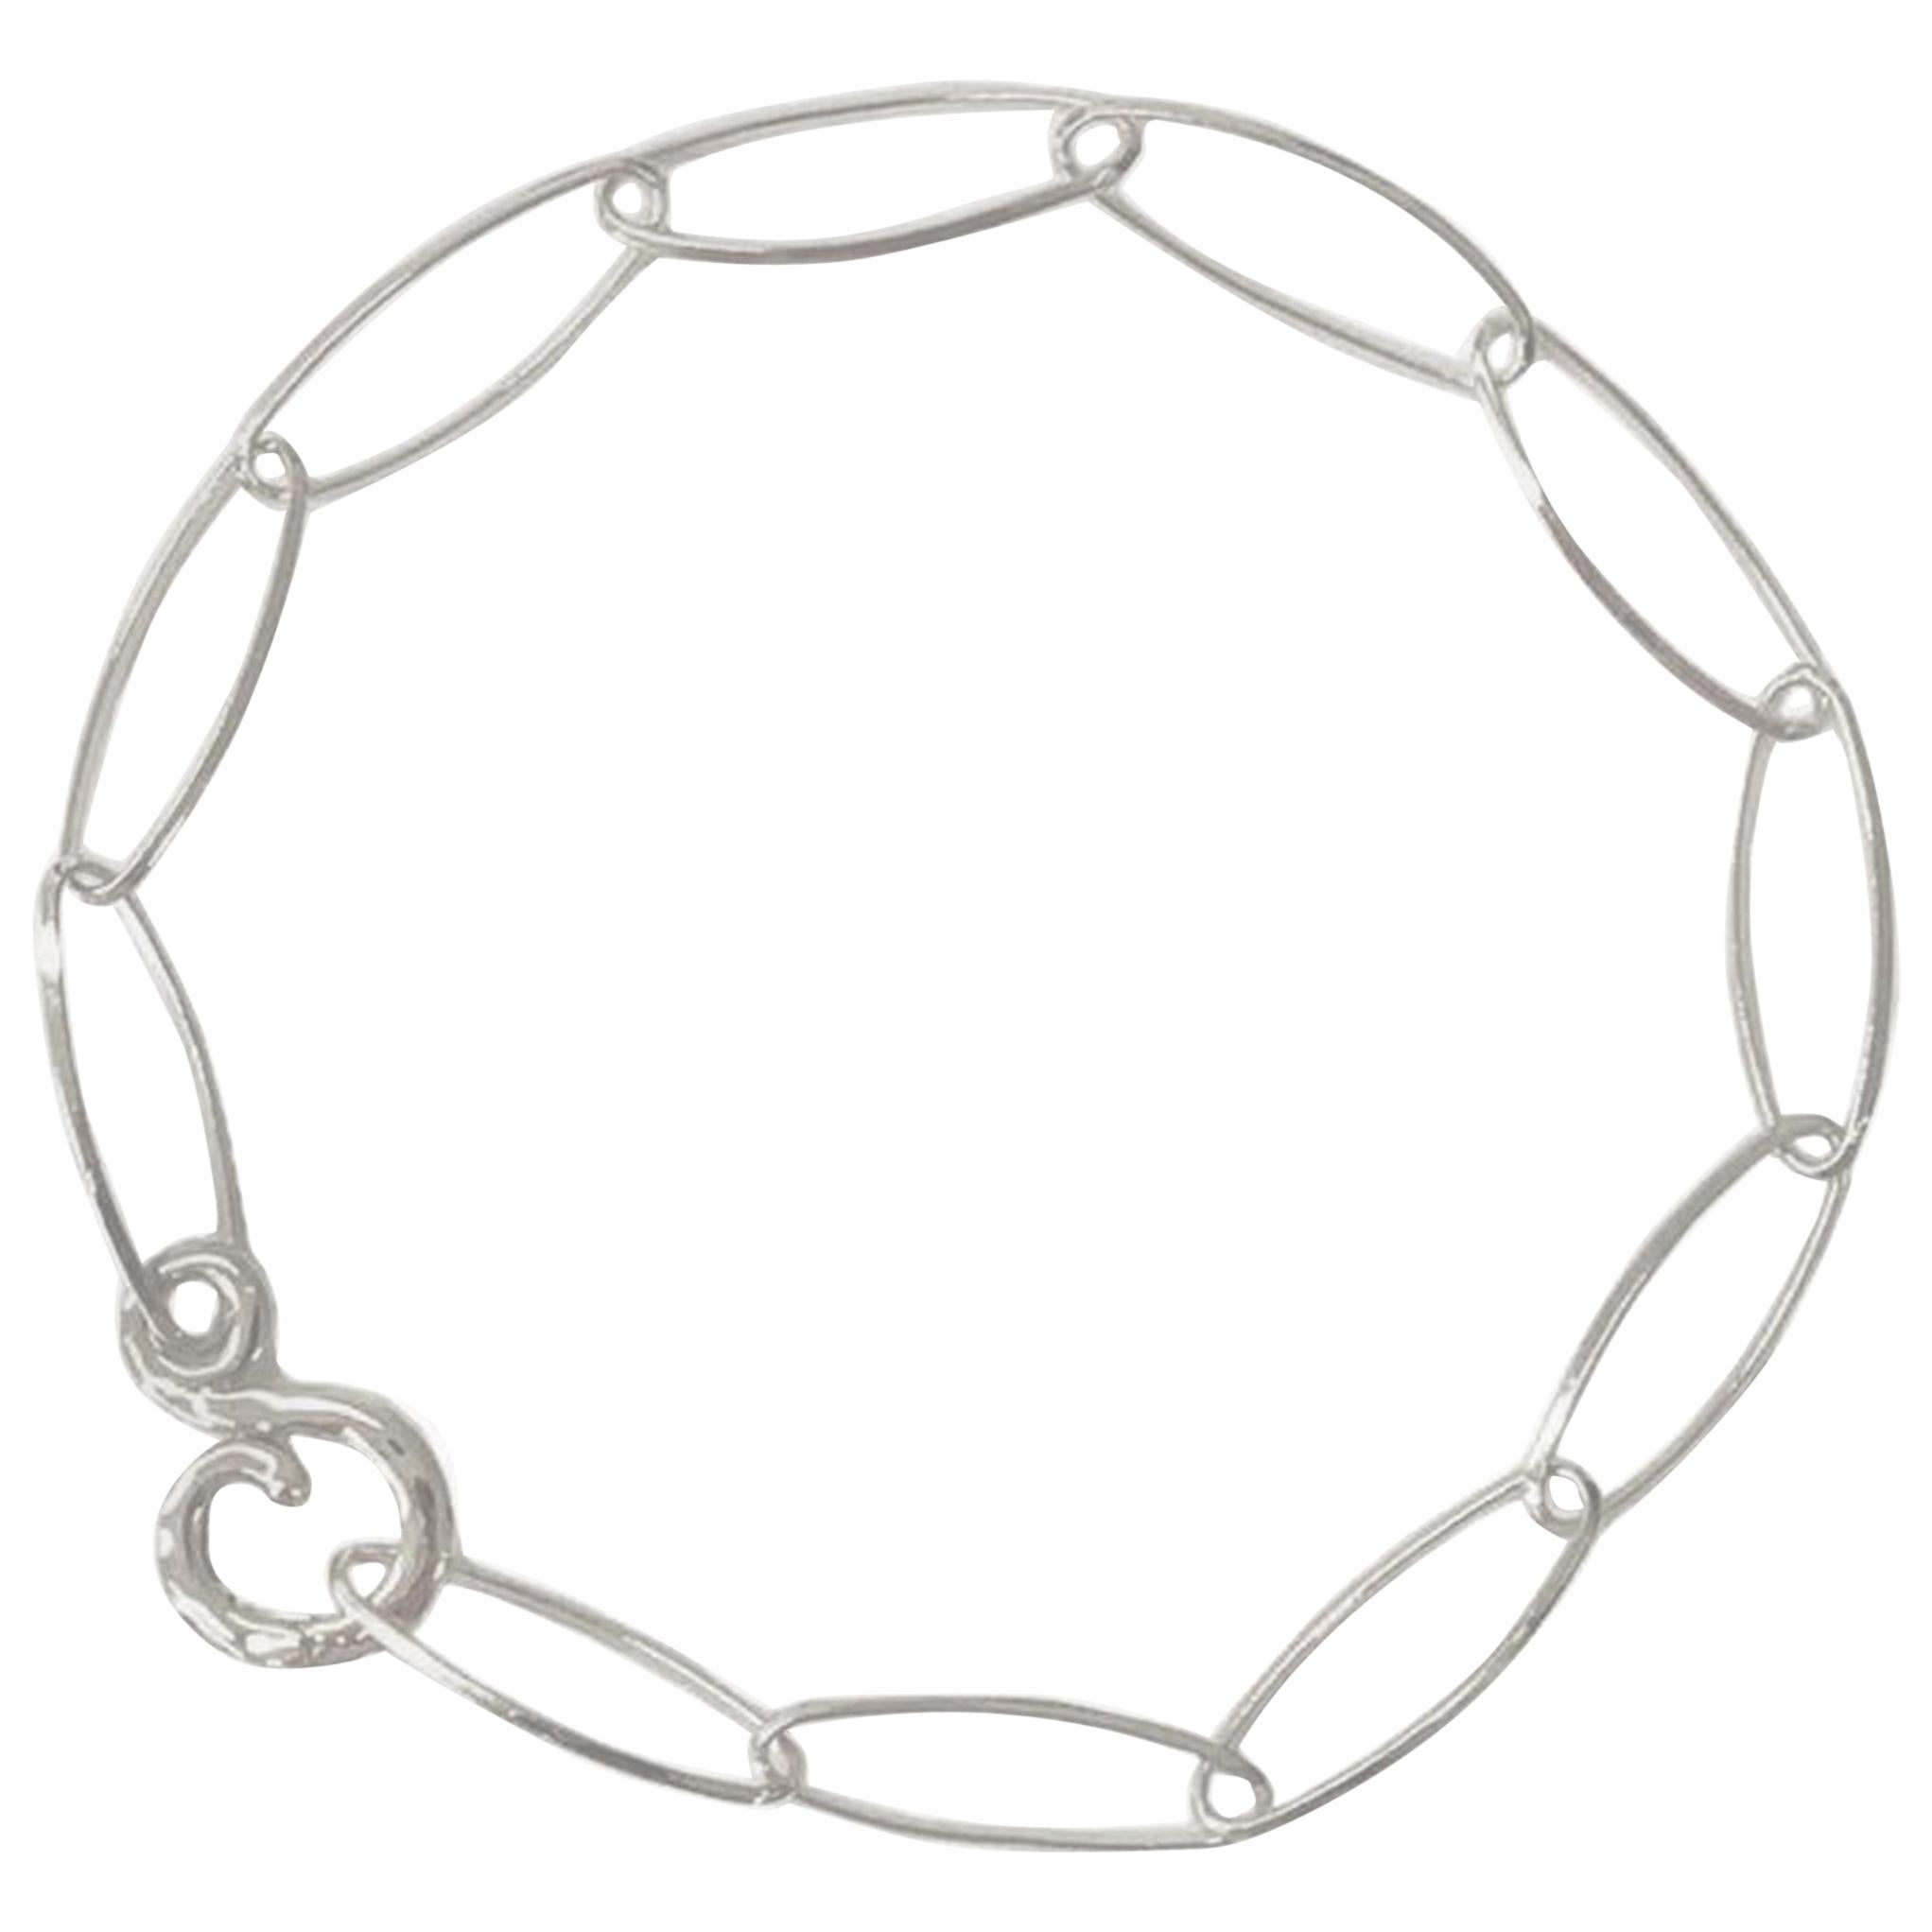 Lace Chain Bracelet For Sale